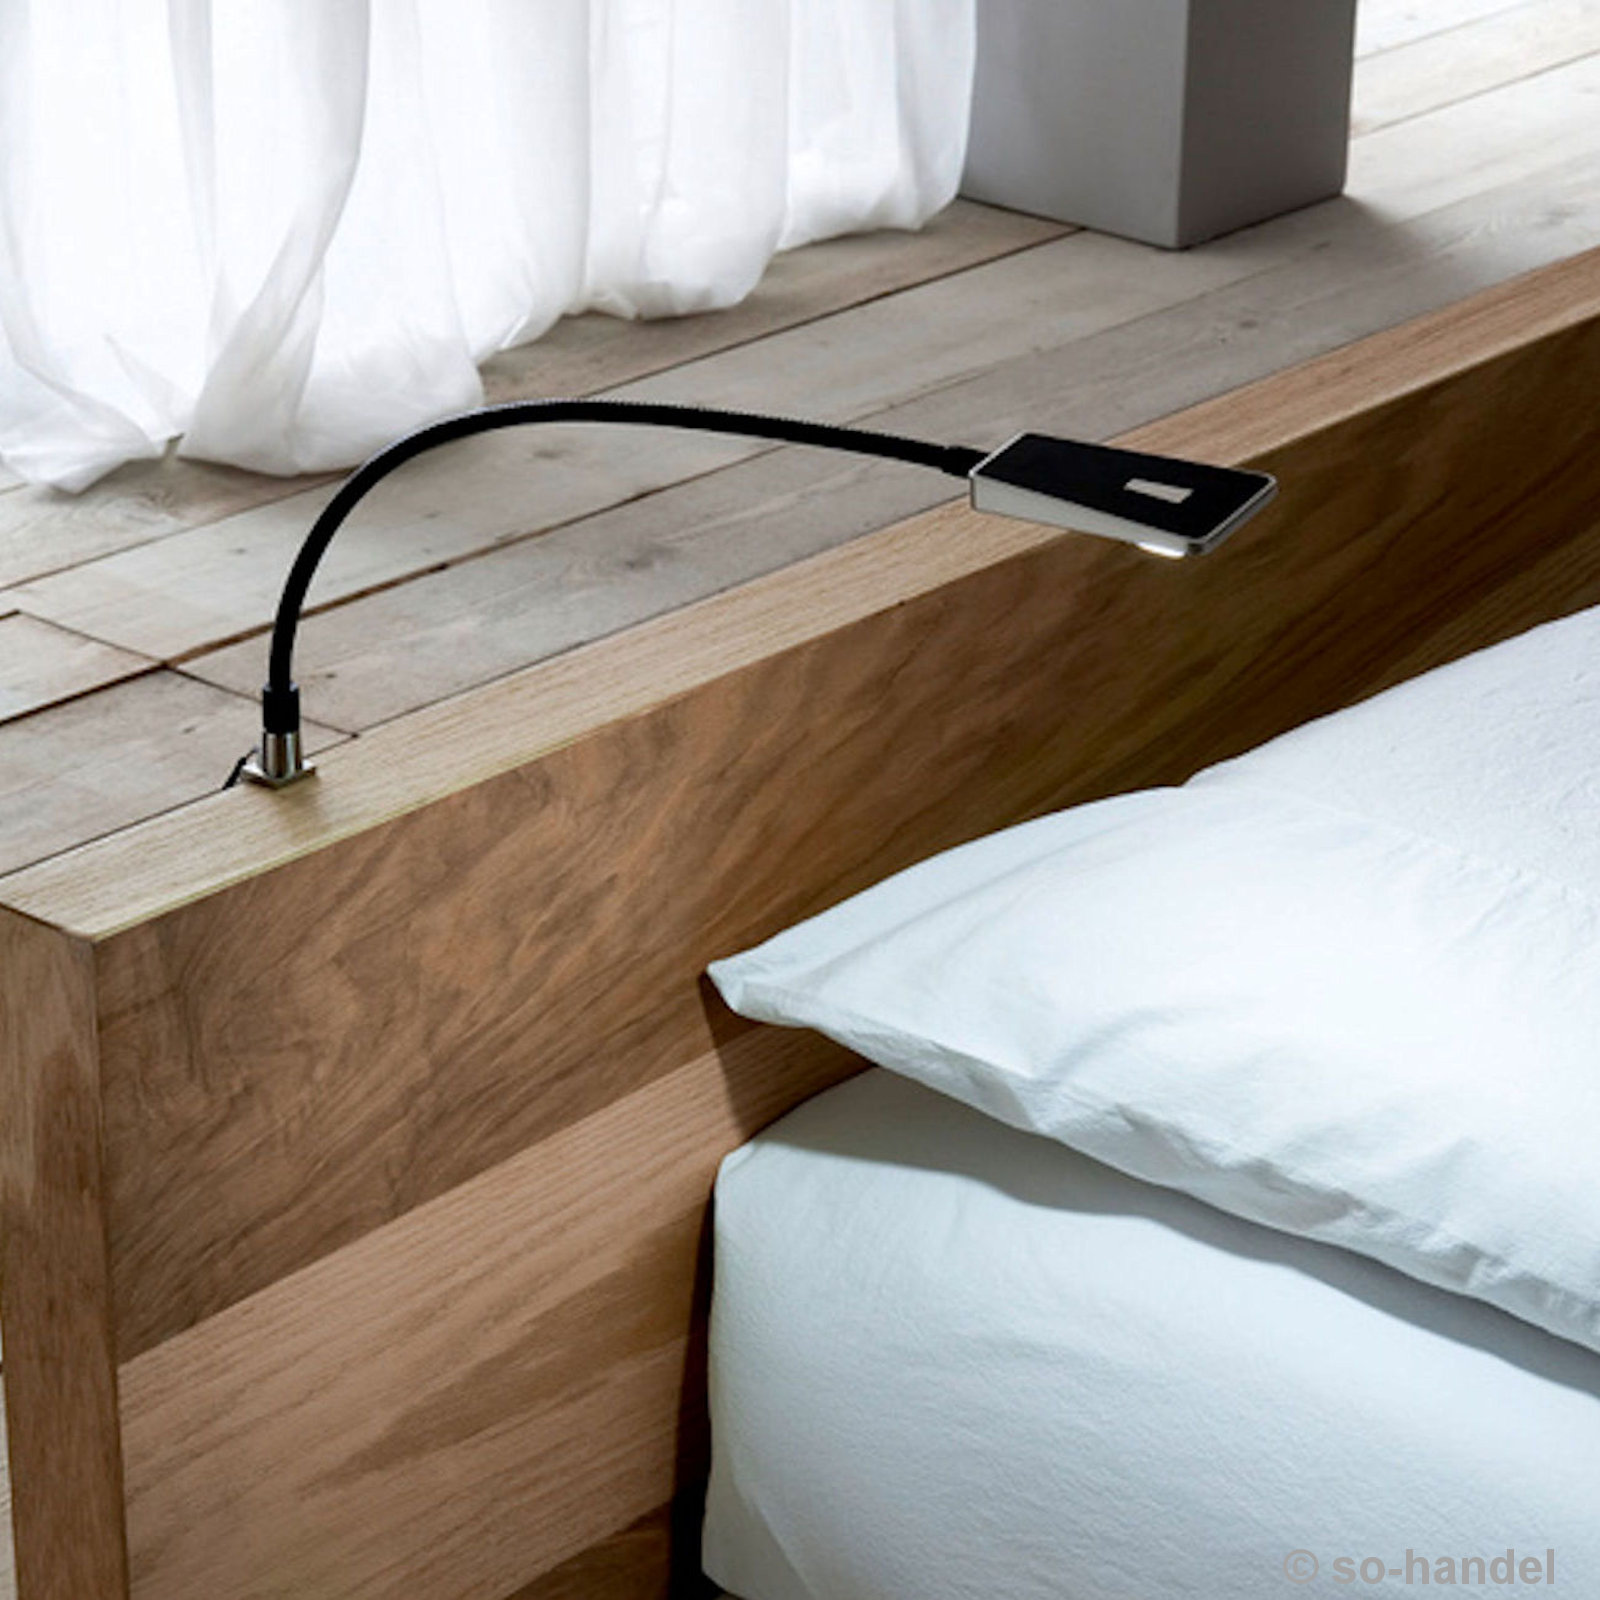 Frcolor 2 stücke LED Nachttischlampe Wand Flexible Schlauch LED Bett Leselampe für Haus Schlafzimmer Lesesaal mit Eu-stecker Schwarz